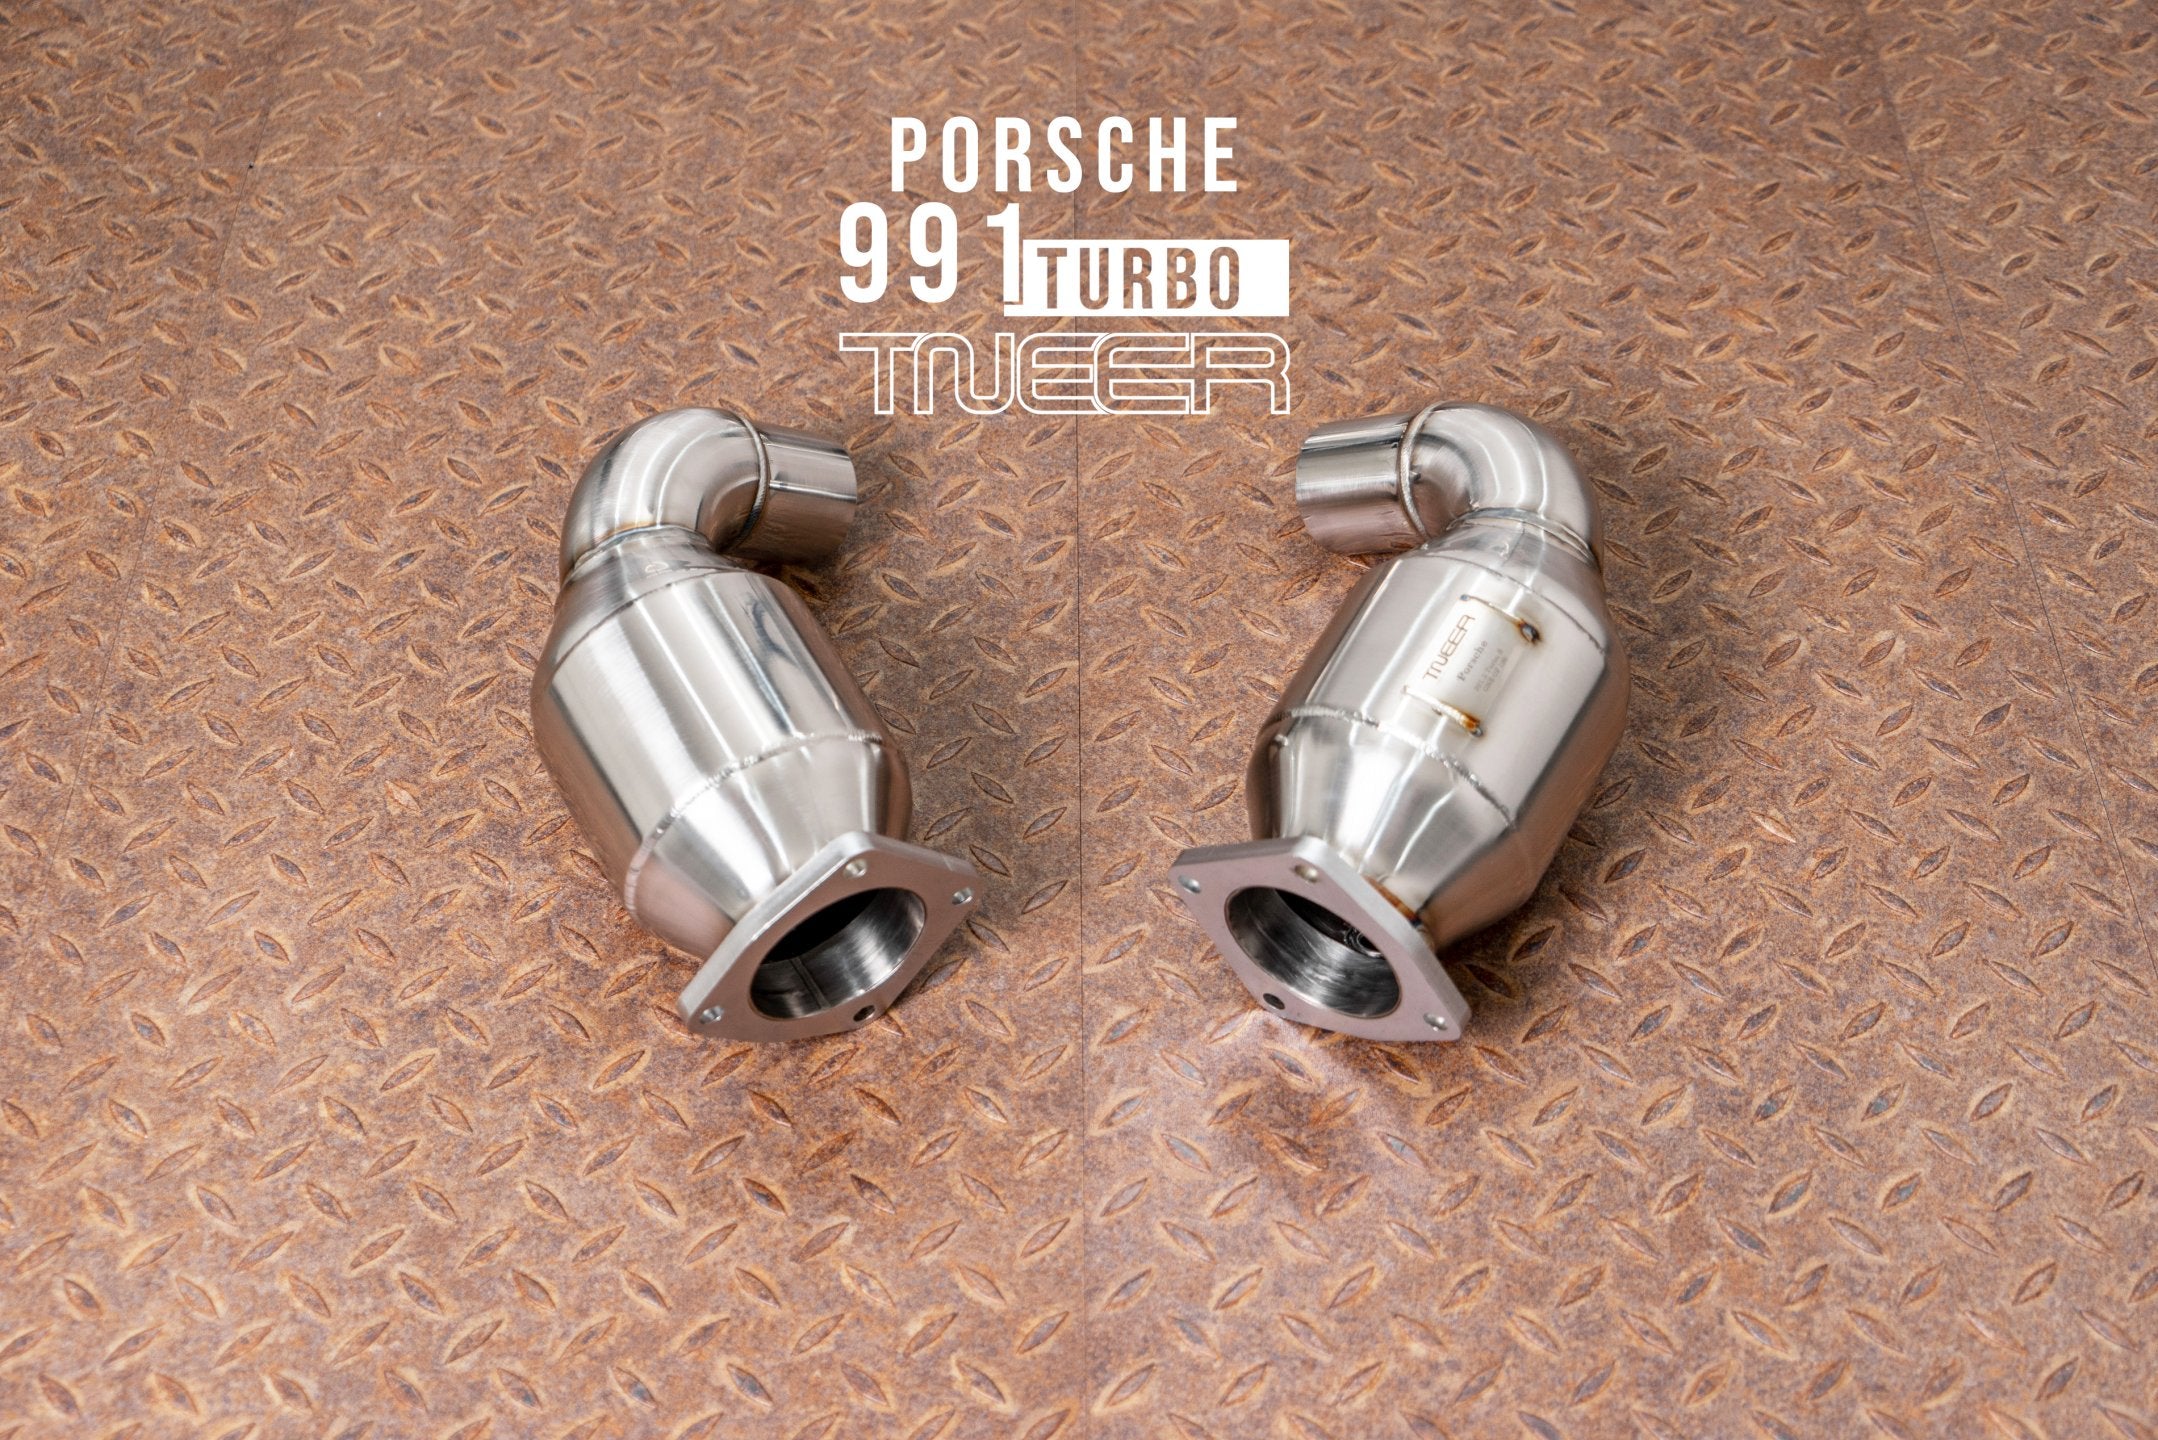 TNEER Klappenauspuffanlage für den Porsche 991 Turbo & Turbo S